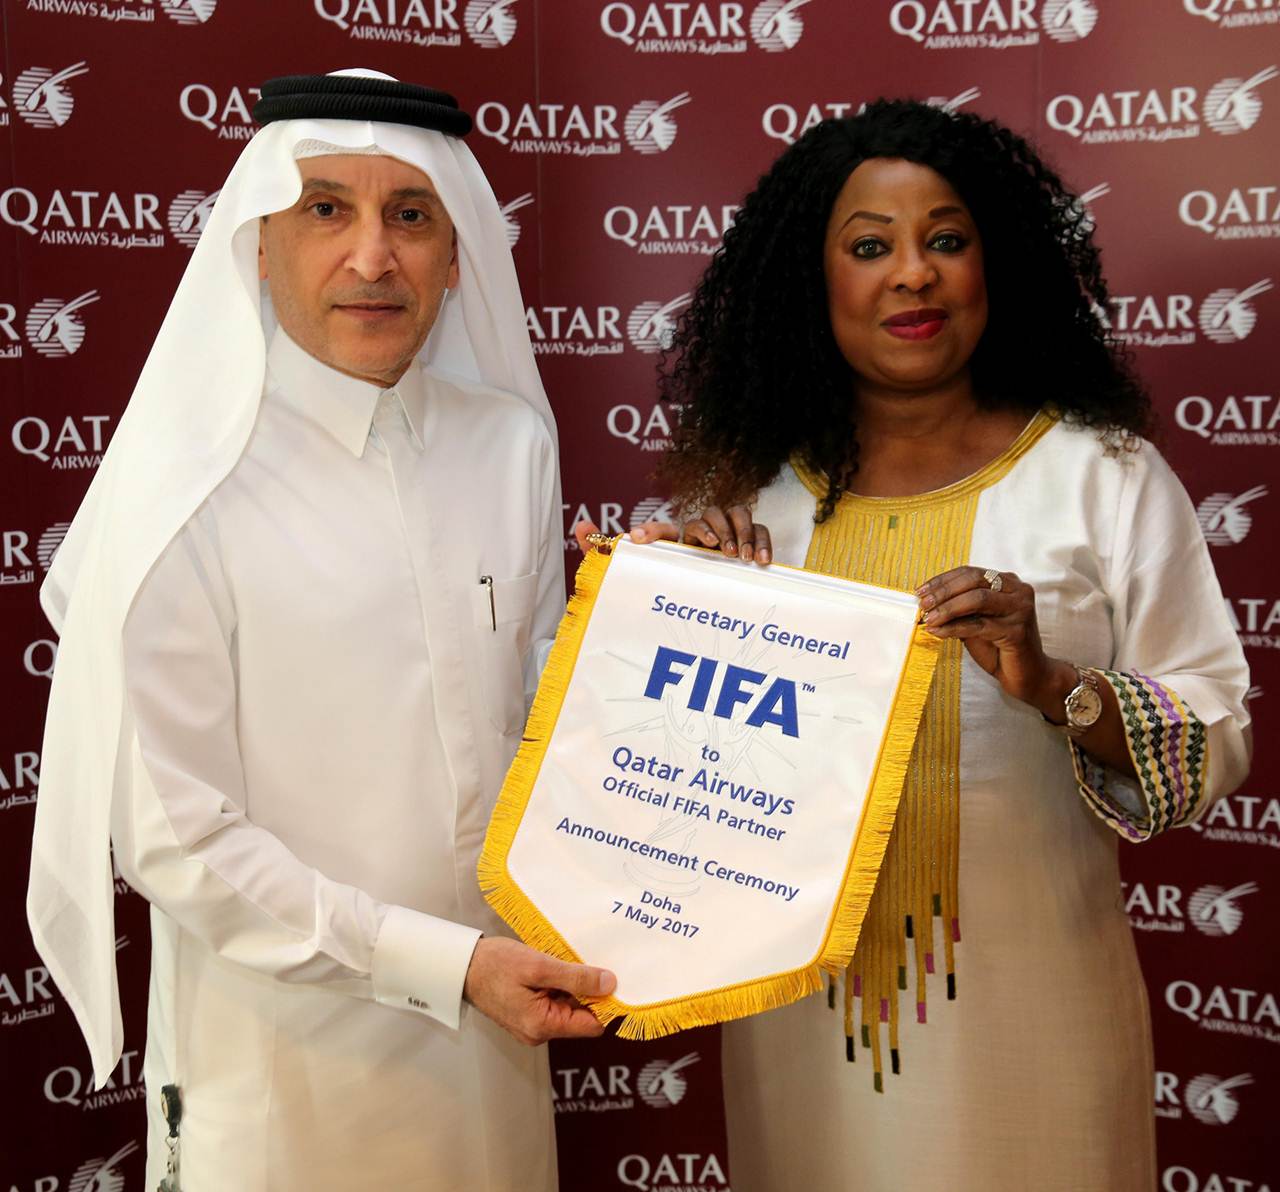 CEO da Qatar Airways e Secretária-Geral da FIFA apresentam acordo de patrocinio até 2022